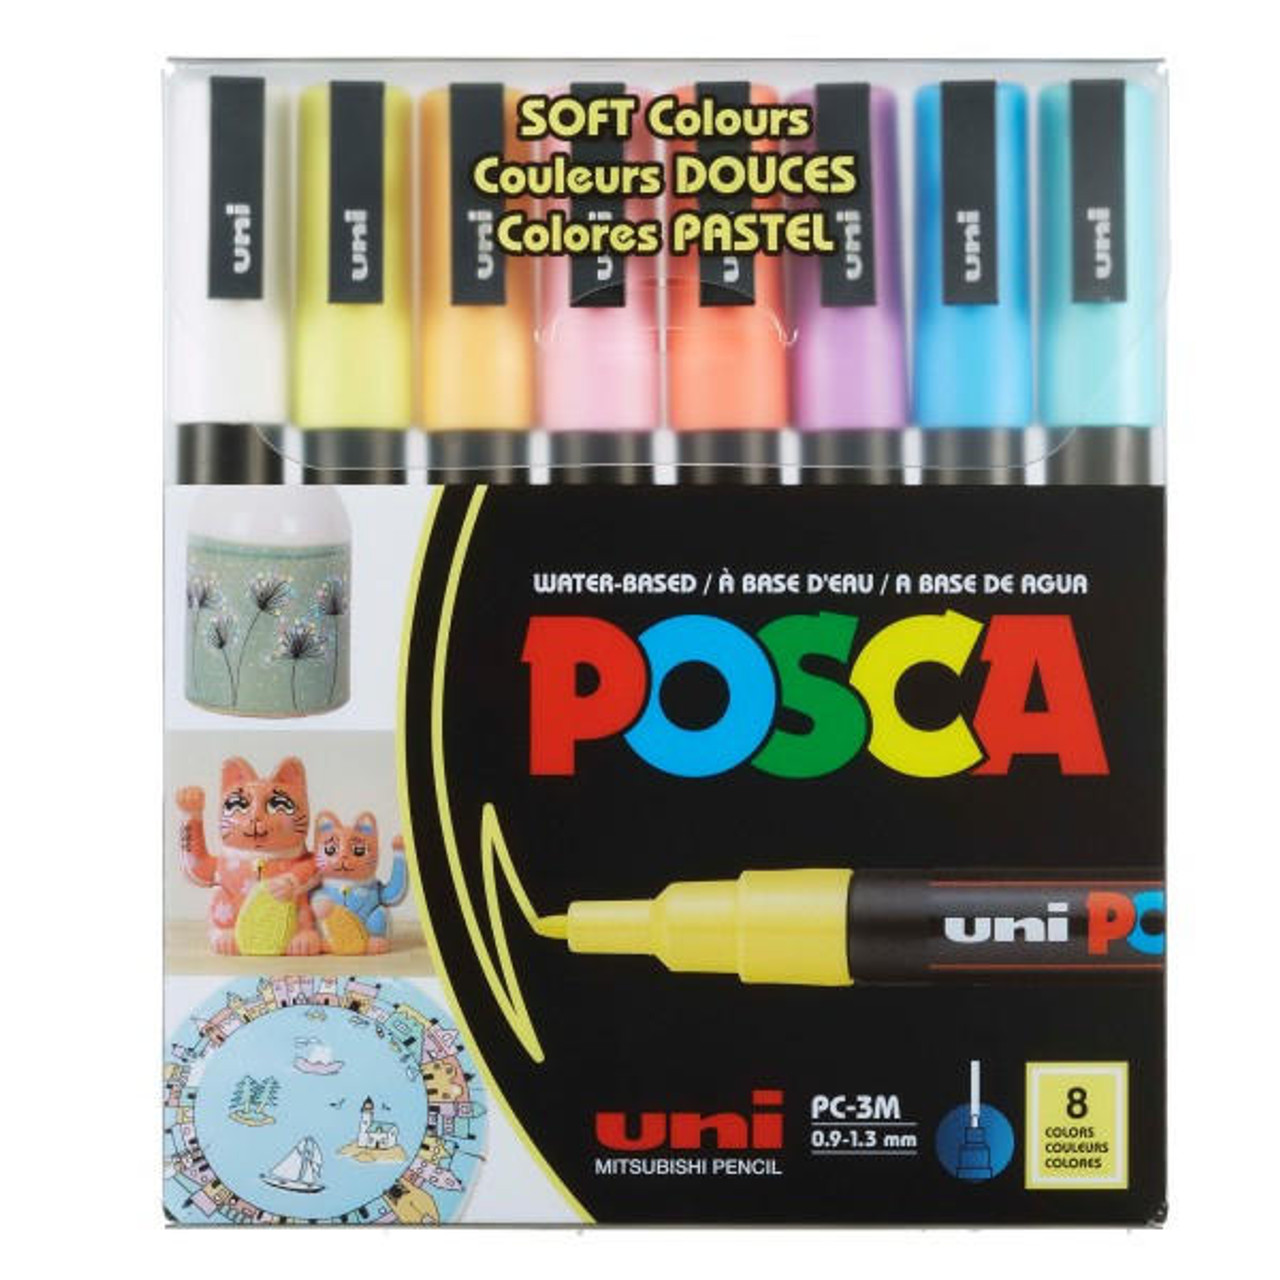 https://cdn11.bigcommerce.com/s-9uf88xhege/images/stencil/1280x1280/products/10372/95365/posca-posca-8-color-paint-marker-set-pc-3m-fine-soft-colours__33504.1699908798.jpg?c=1